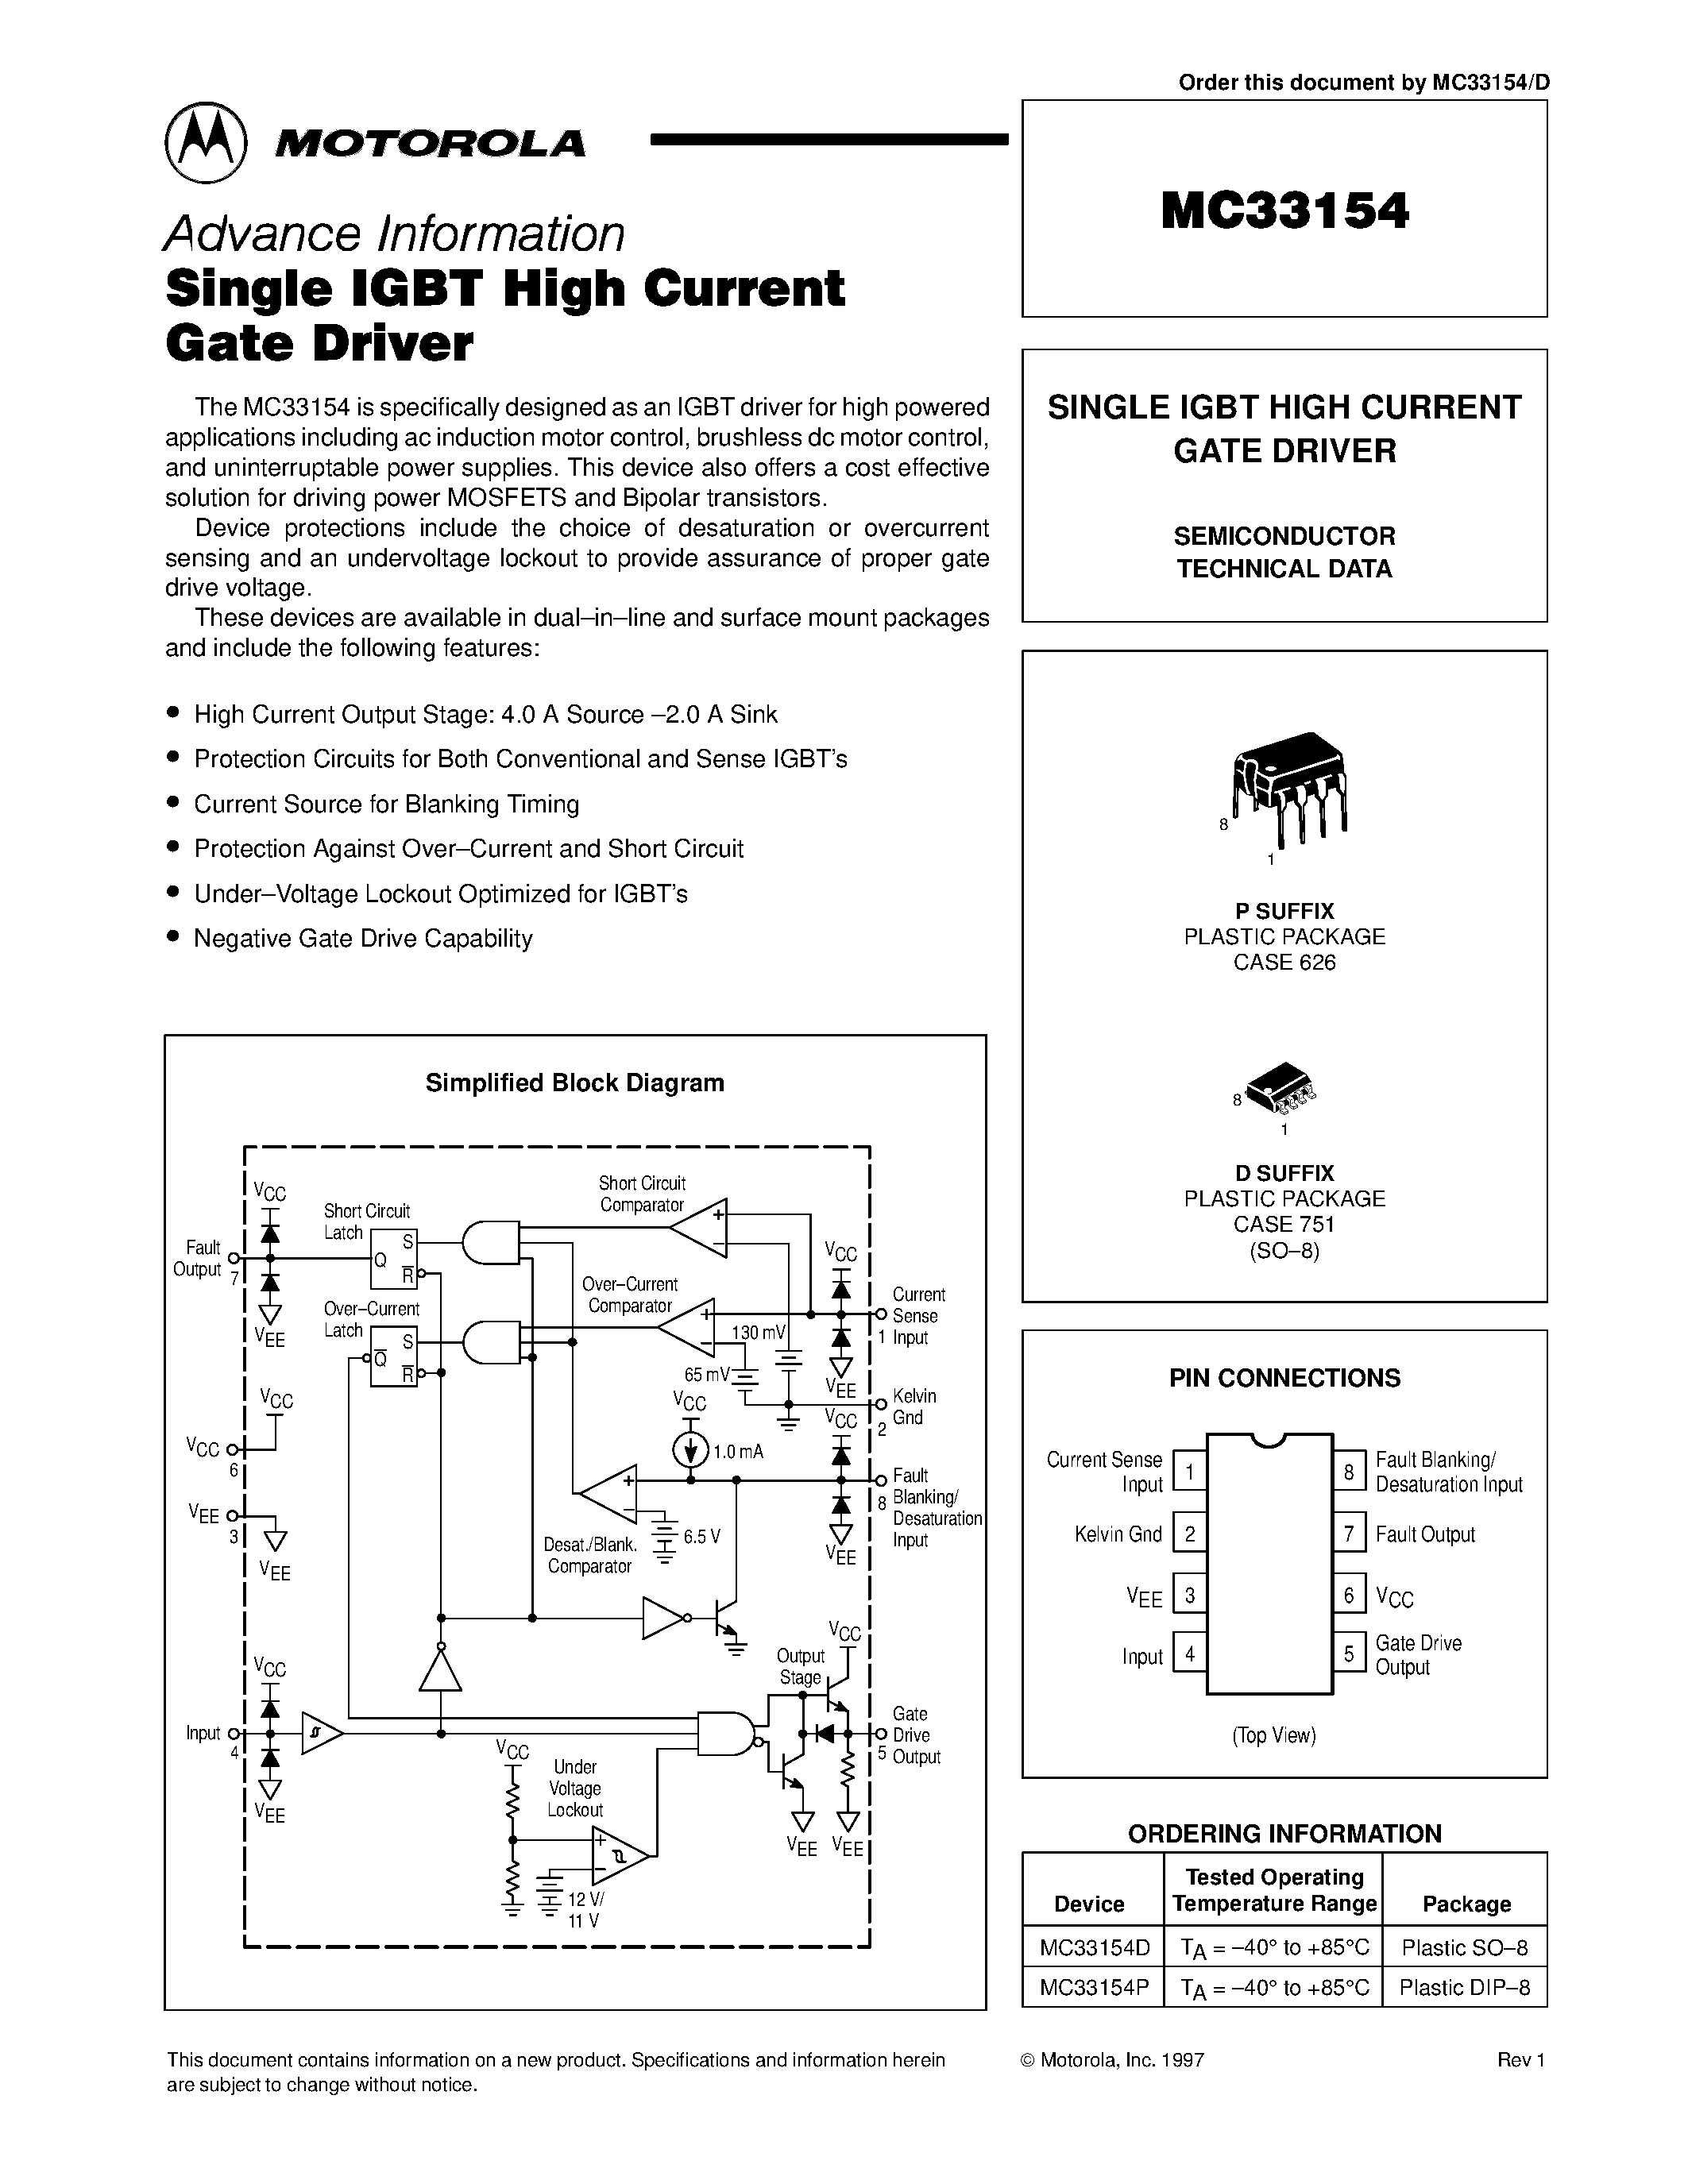 Даташит MC33154 - SINGLE IGBT HIGH CURRENT GATE DRIVER страница 1